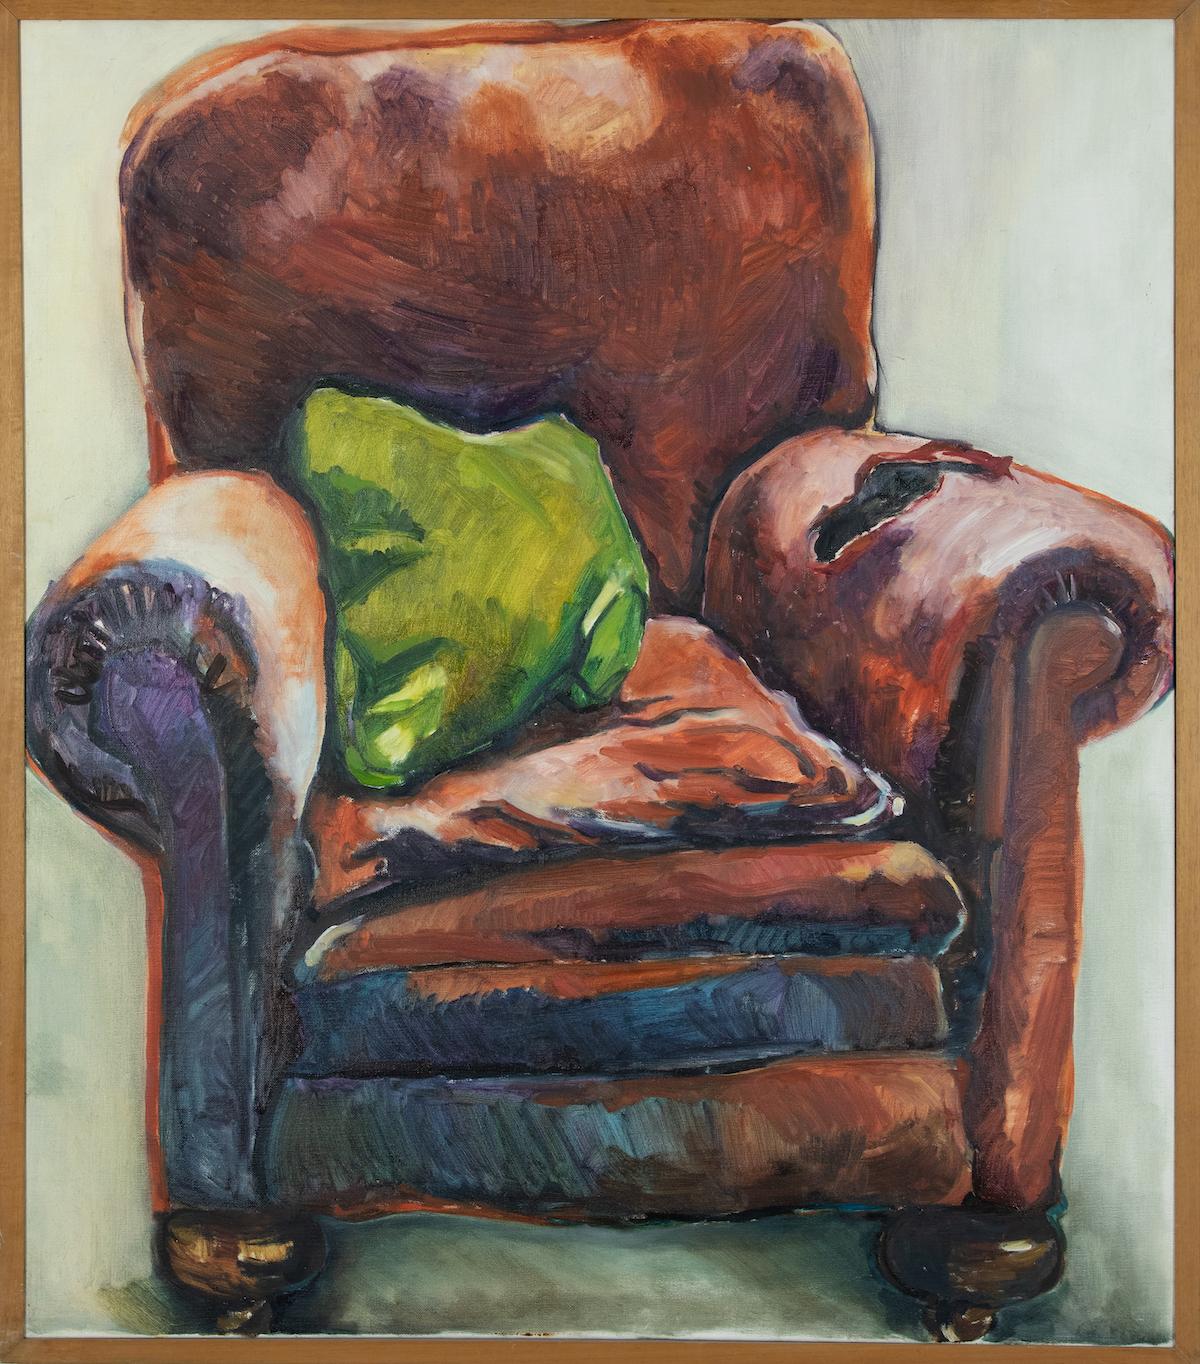 Le fauteuil d'Annabel Daou (née en 1967)
Huile sur toile
116,5 x 102 cm (45 ⁷/₈ x 40 ¹/₈ inches)
Signé au verso, Annabel Pissarro

Provenance
Acheté directement auprès de l'artiste

Une œuvre de jeunesse de cet important artiste né au Liban qui vit